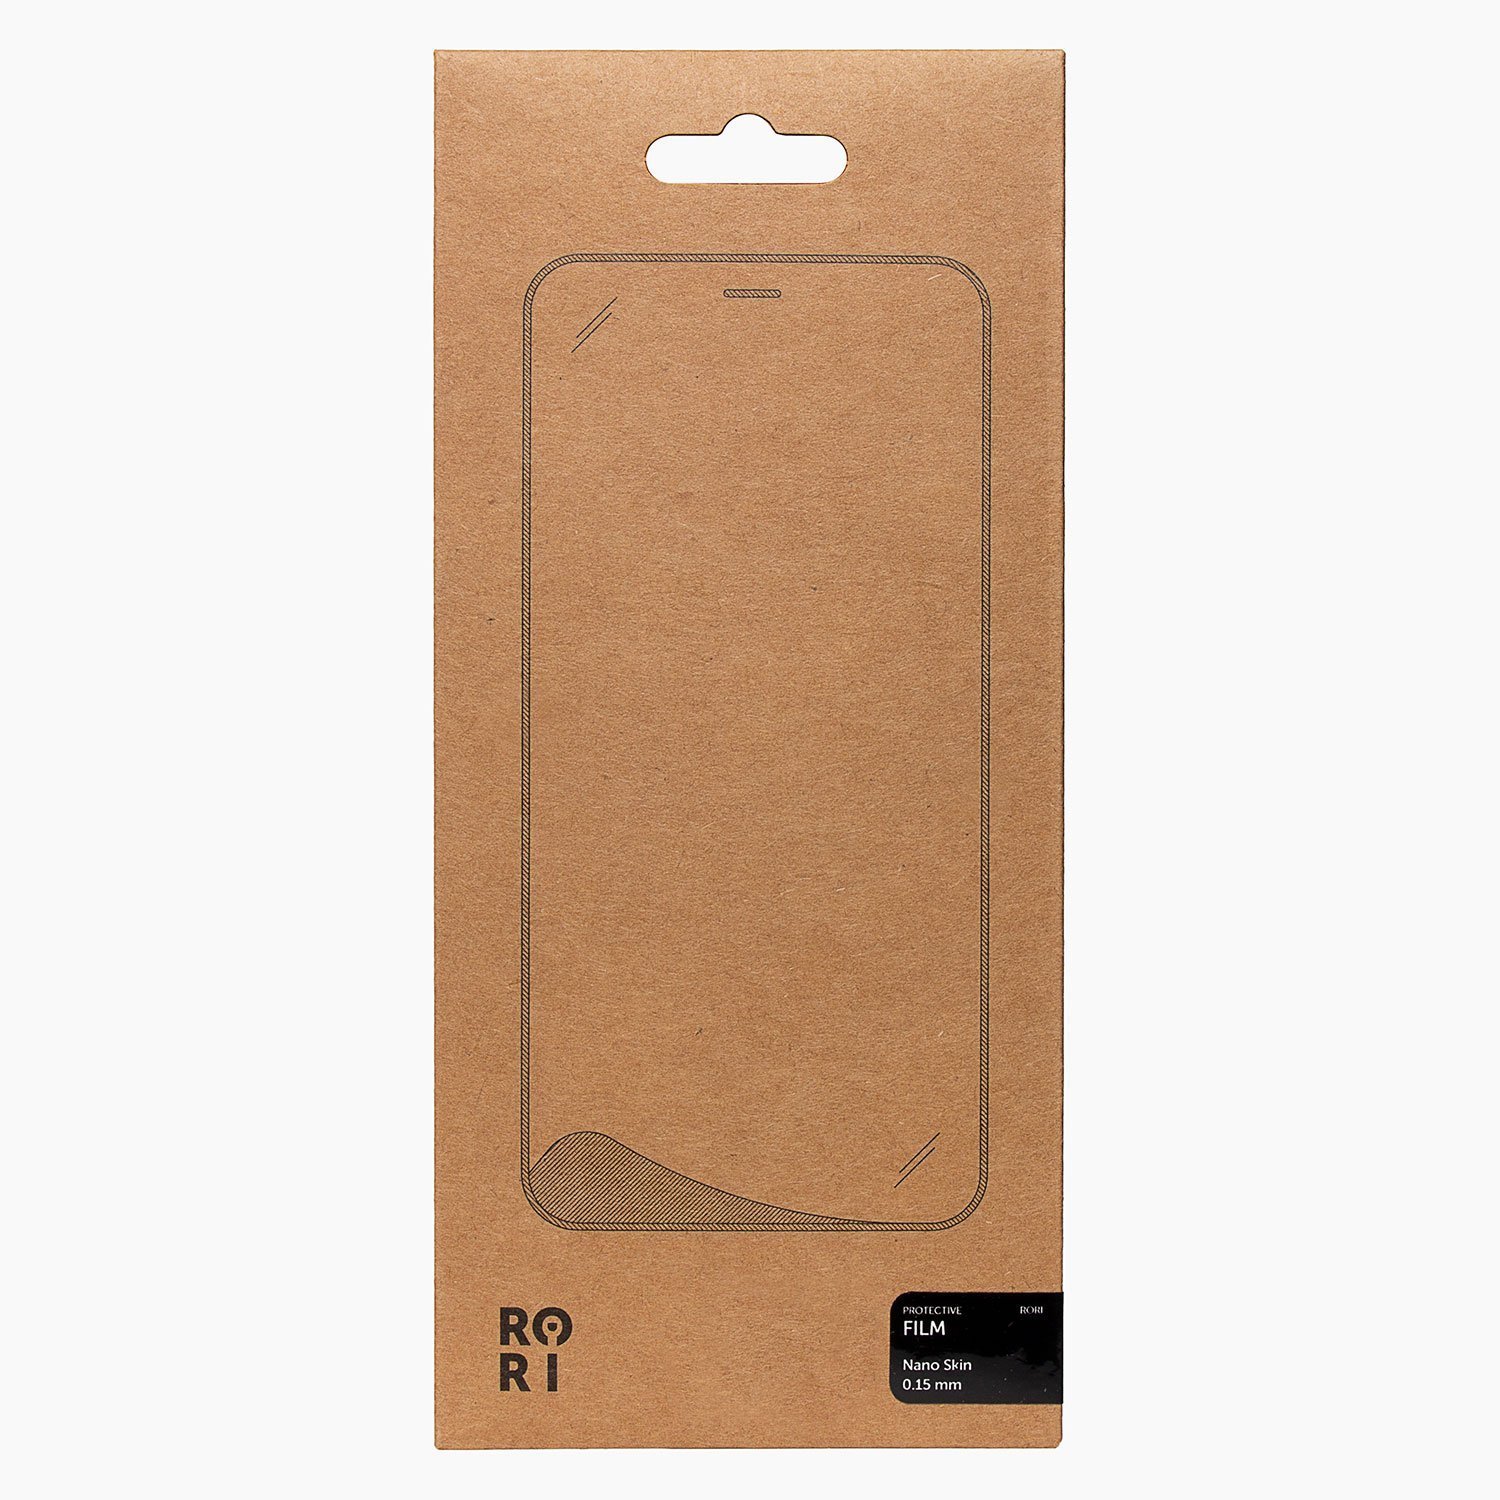 Защитная пленка Rori Polymer для экрана смартфона Huawei Honor 9S/Huawei Y5p, FullScreen, черная рамка (119512)